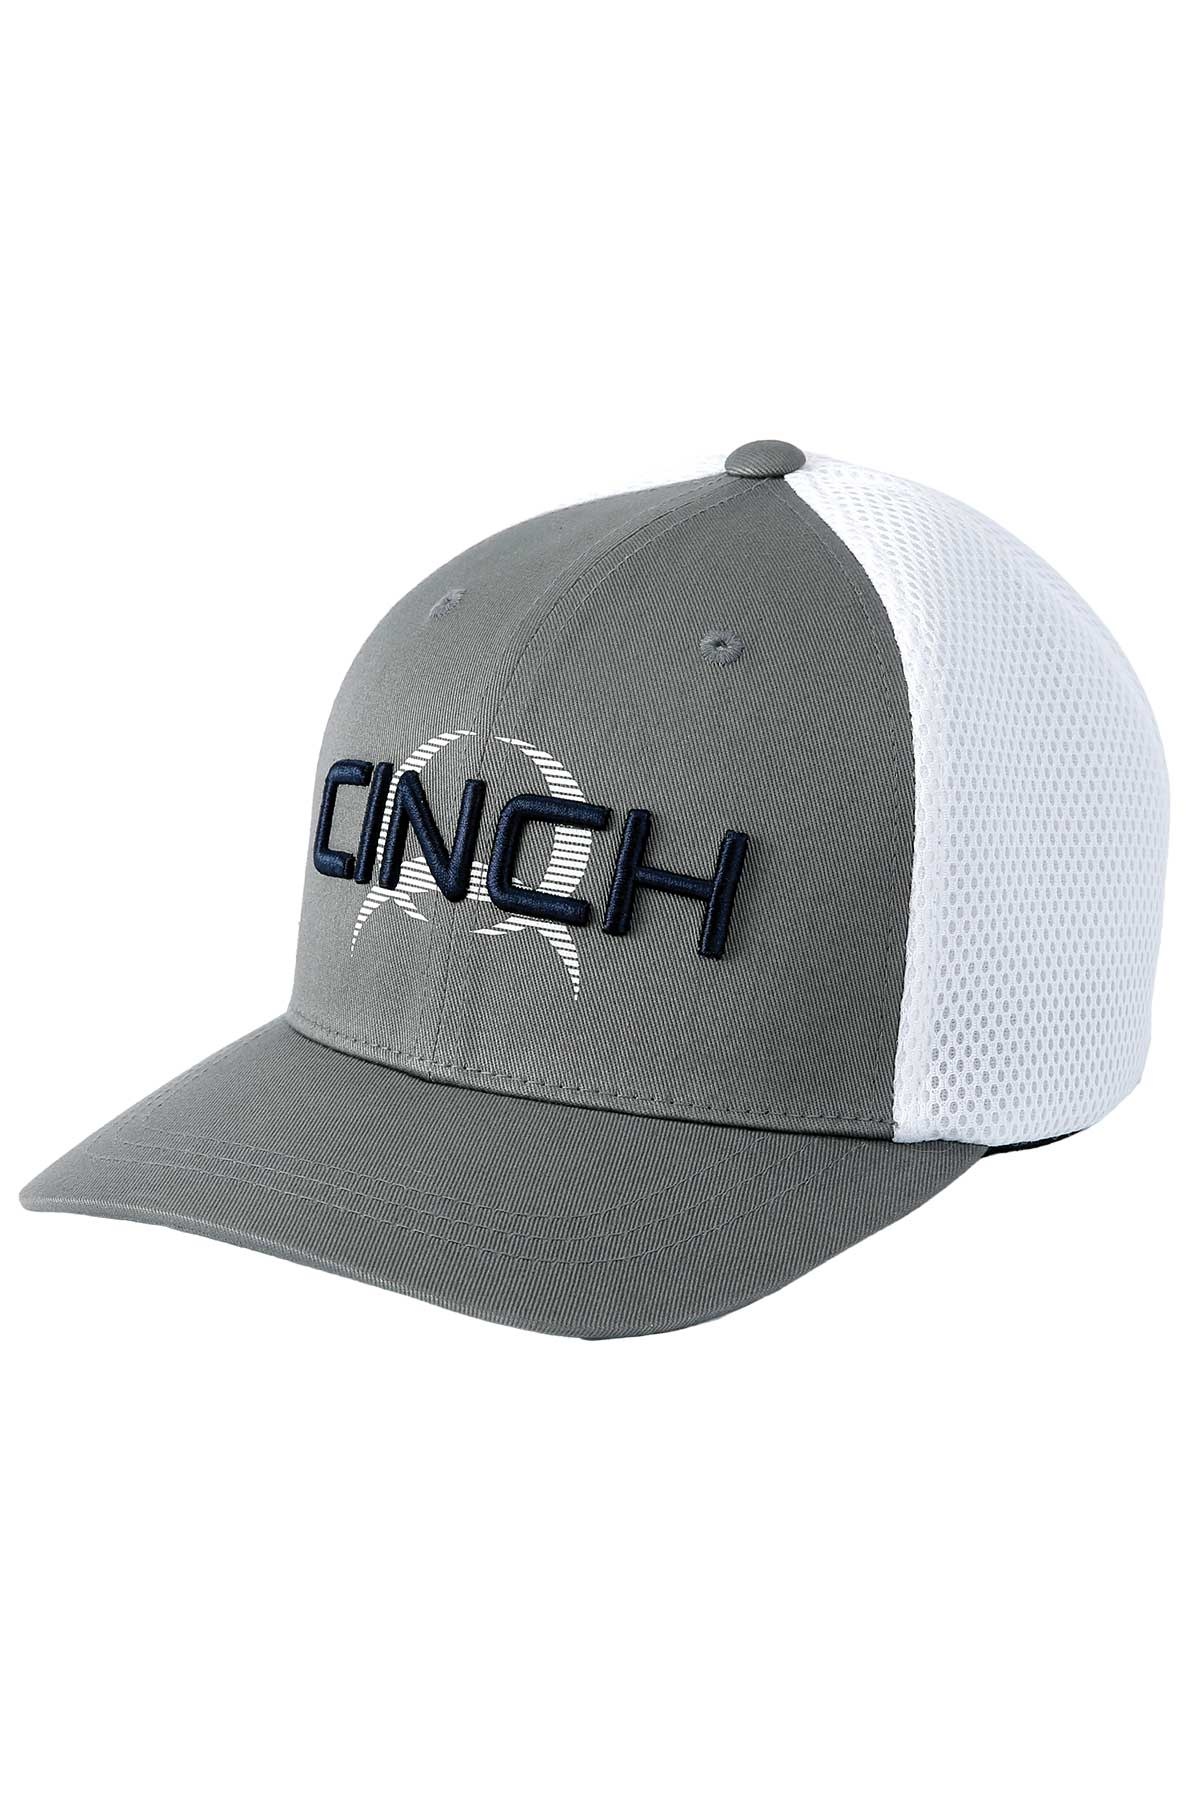 GRAY CINCH CAP - Wear FLEXFIT MCC0653311 Western Corral